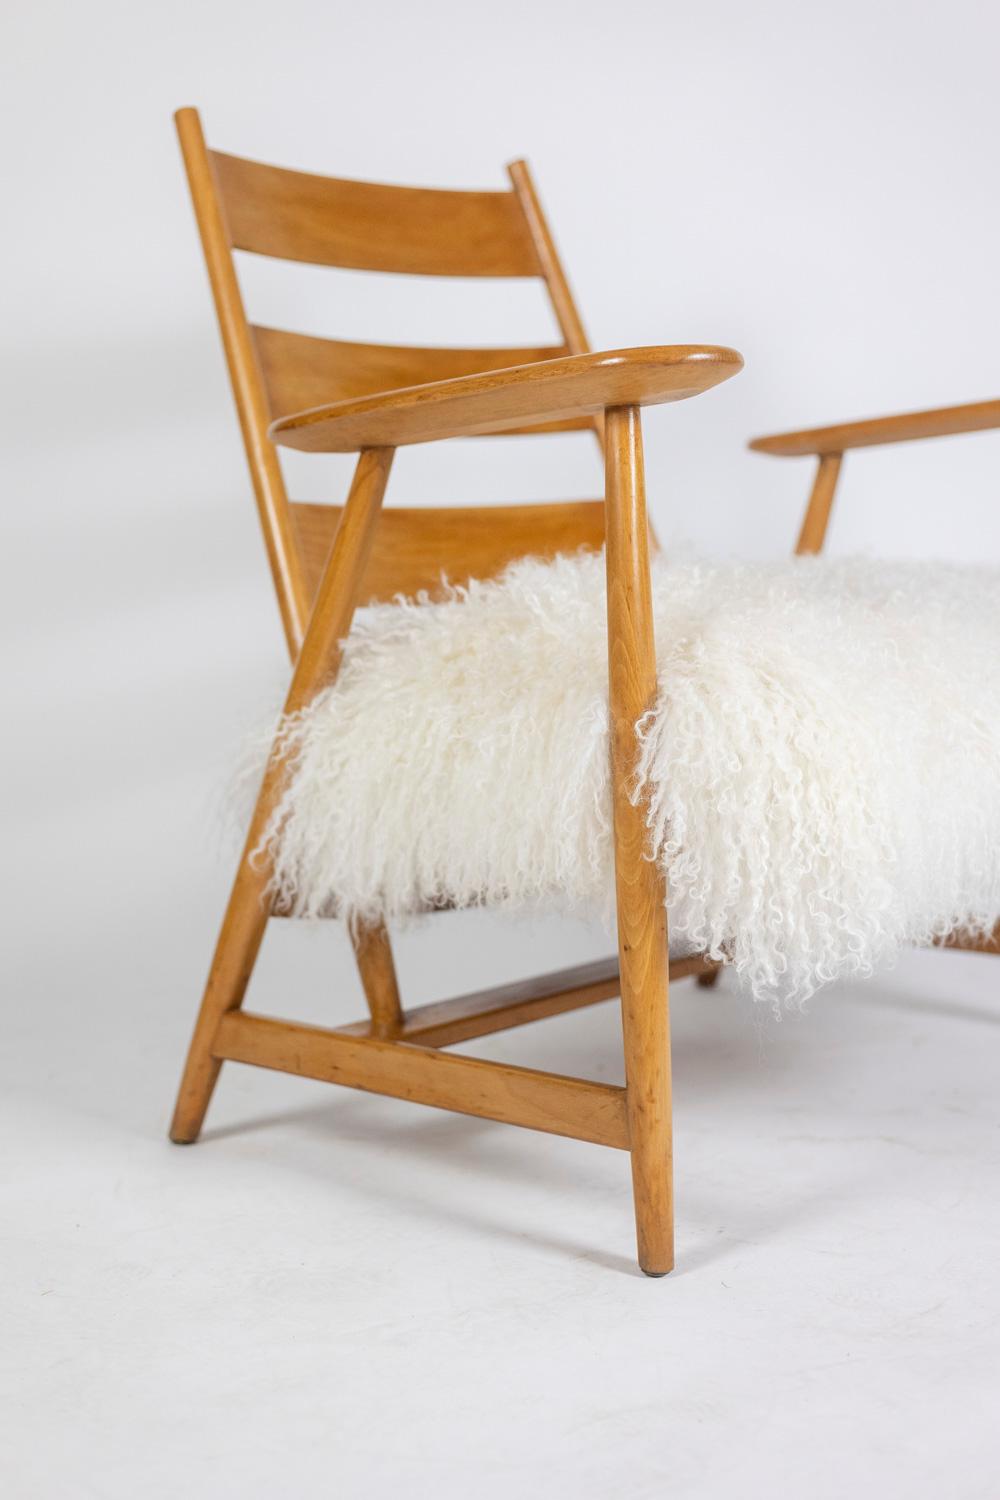 Paire de fauteuils « lounge » en hêtre blond. Dossier de forme incurvée, piètement de forme compas avec sa barre d’entretoise. Accotoirs larges. Assise en peau de chèvre tibétaine.

Travail français réalisé dans les années 1950.